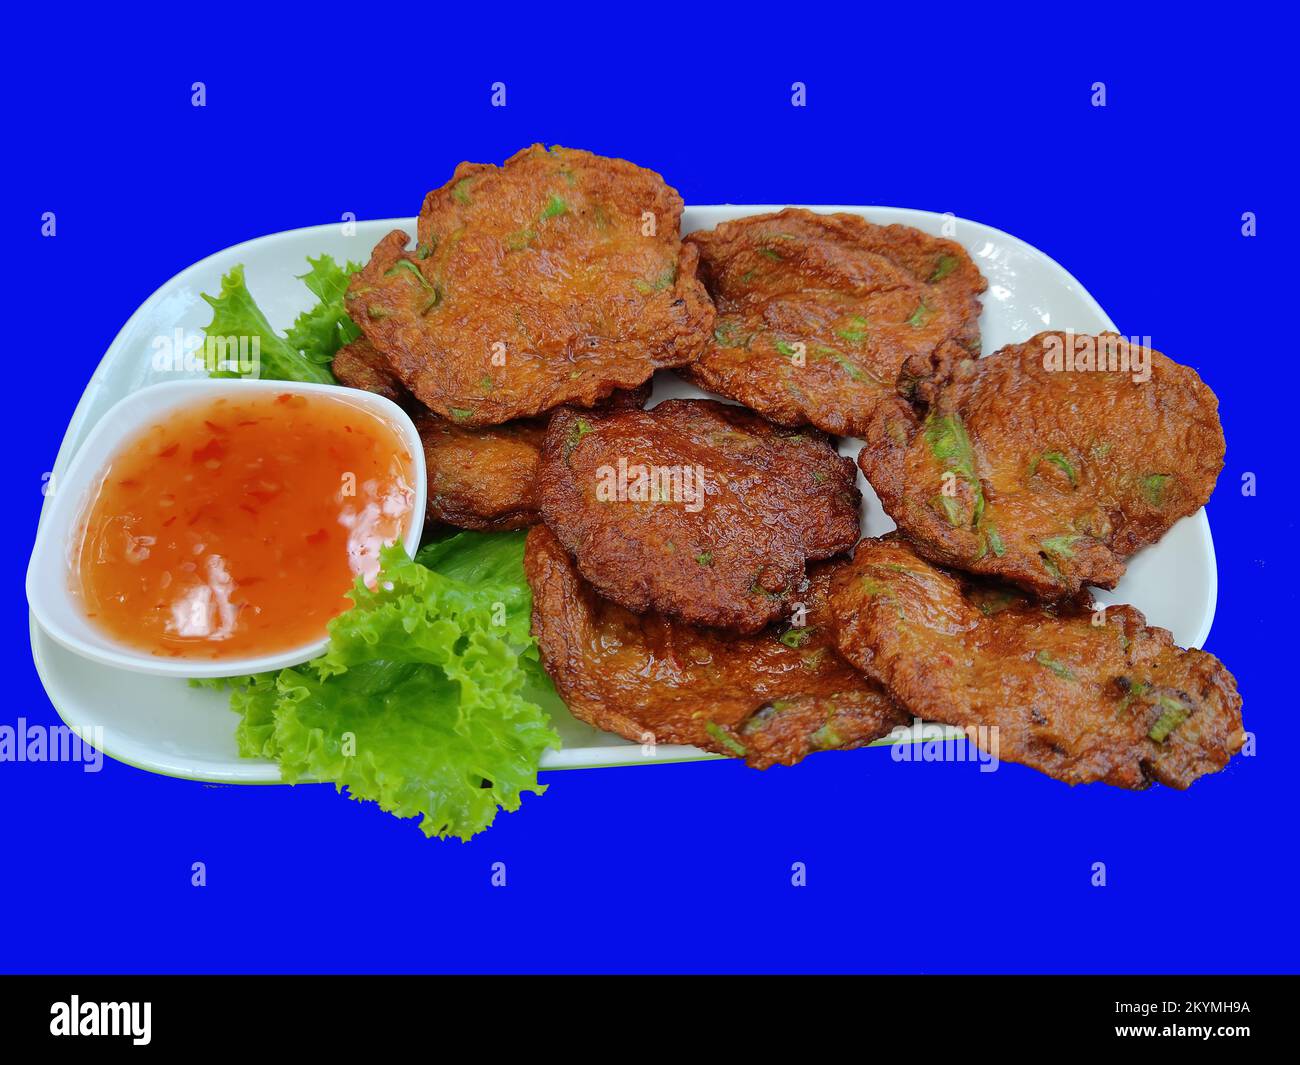 Patty de poisson frit isolée, l'ingrédient important est le filet de fnifcorégone clown, le haricot de Sting, et la pâte de curry. Cuisine populaire thaïlandaise Banque D'Images